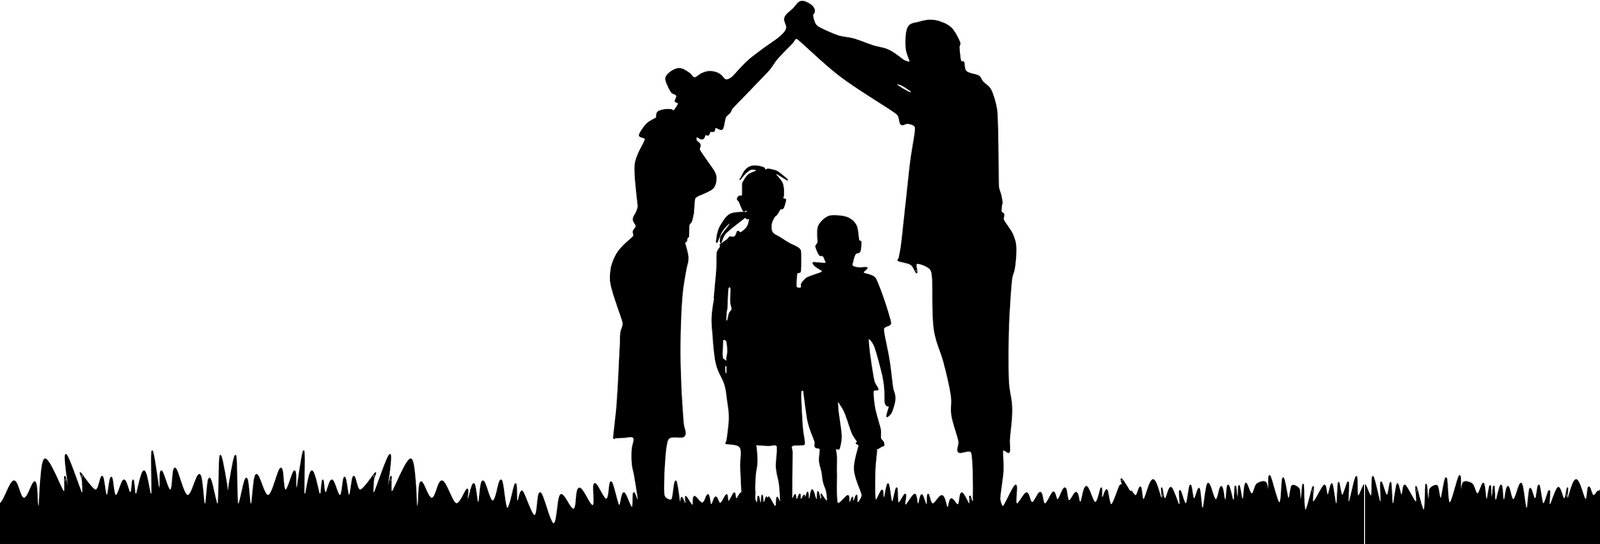 Lição 5 - Conselhos valiosos para a vida cristã em família I